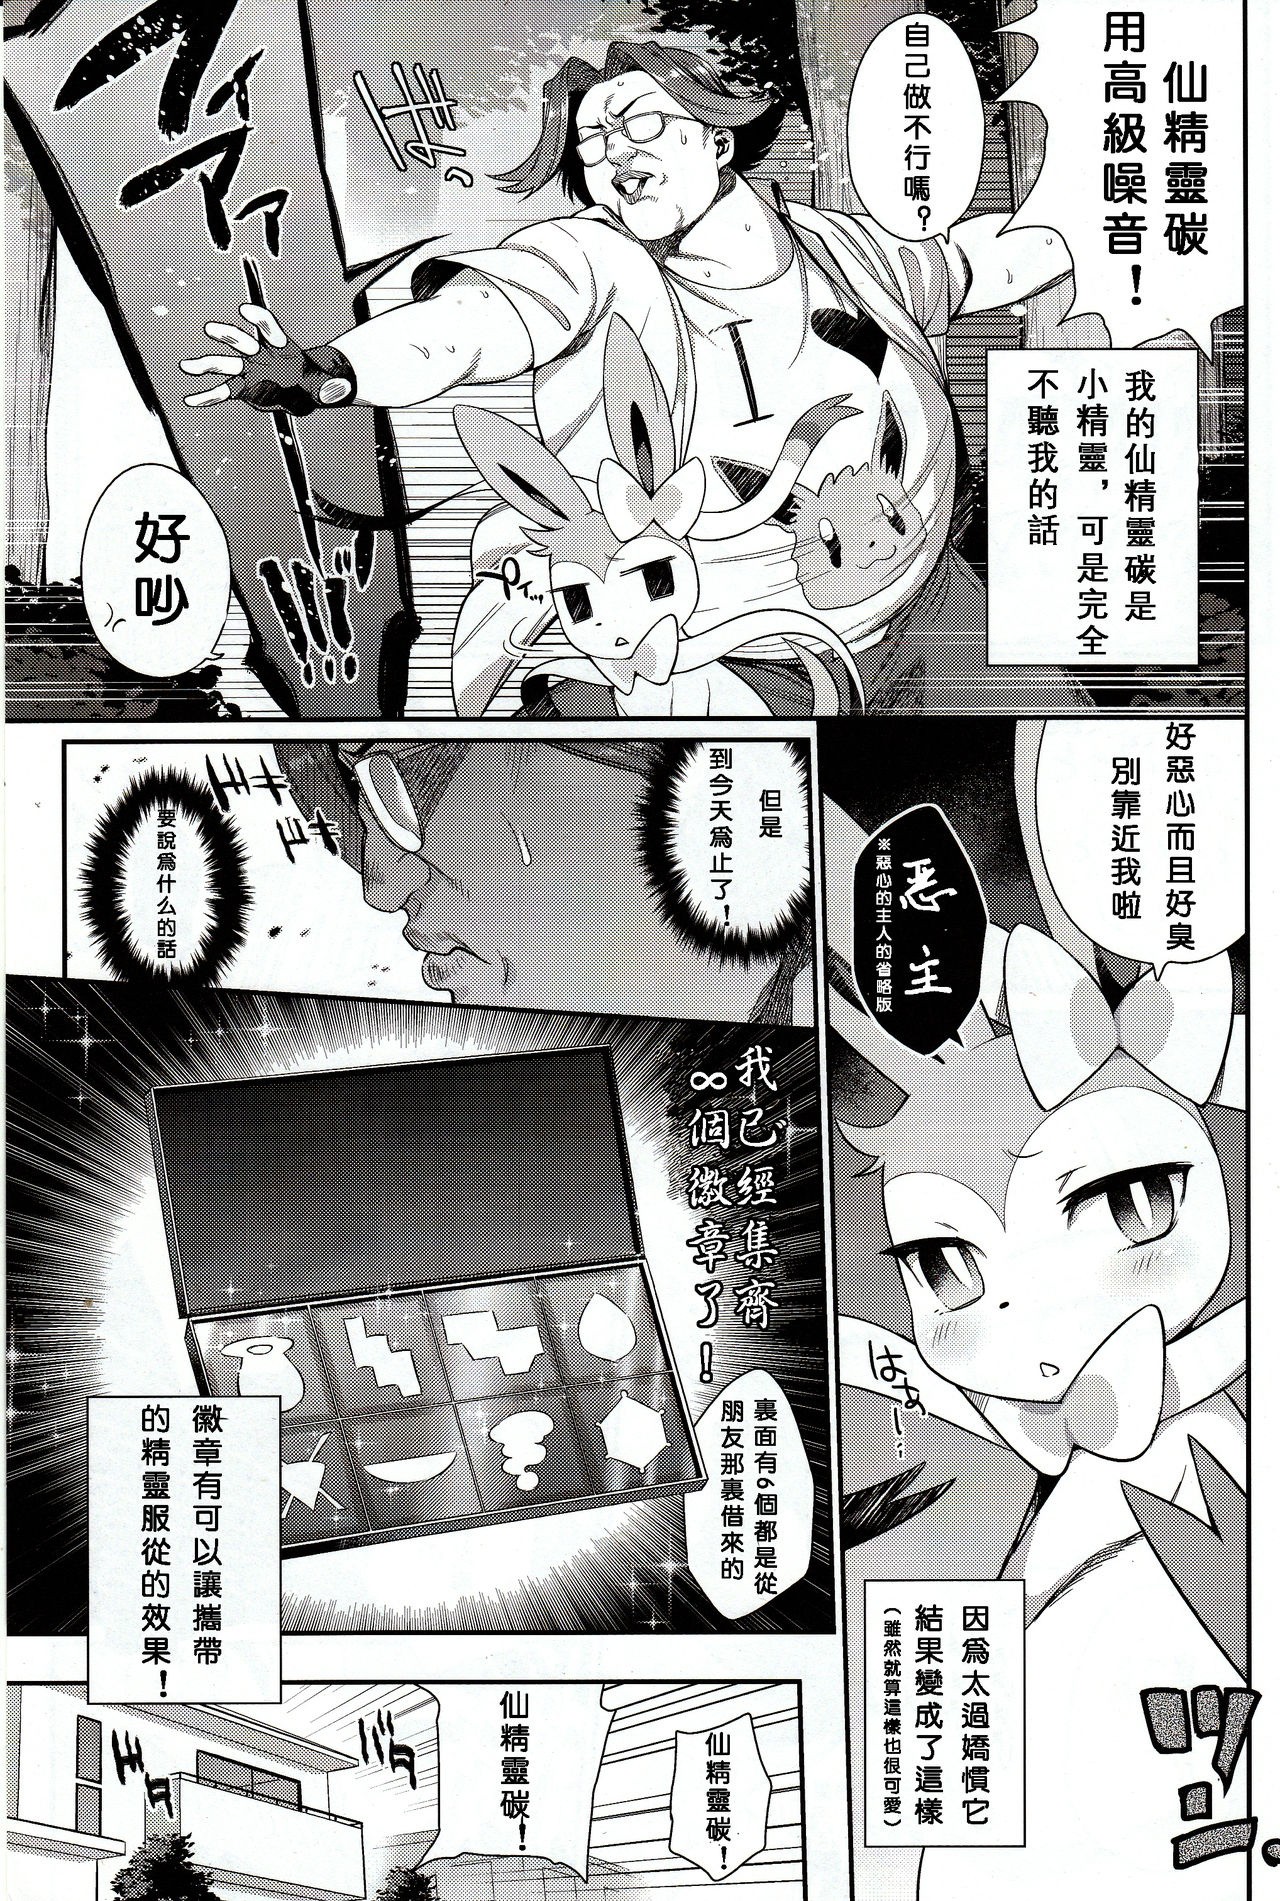 Hankouki Monster hentai manga picture 2